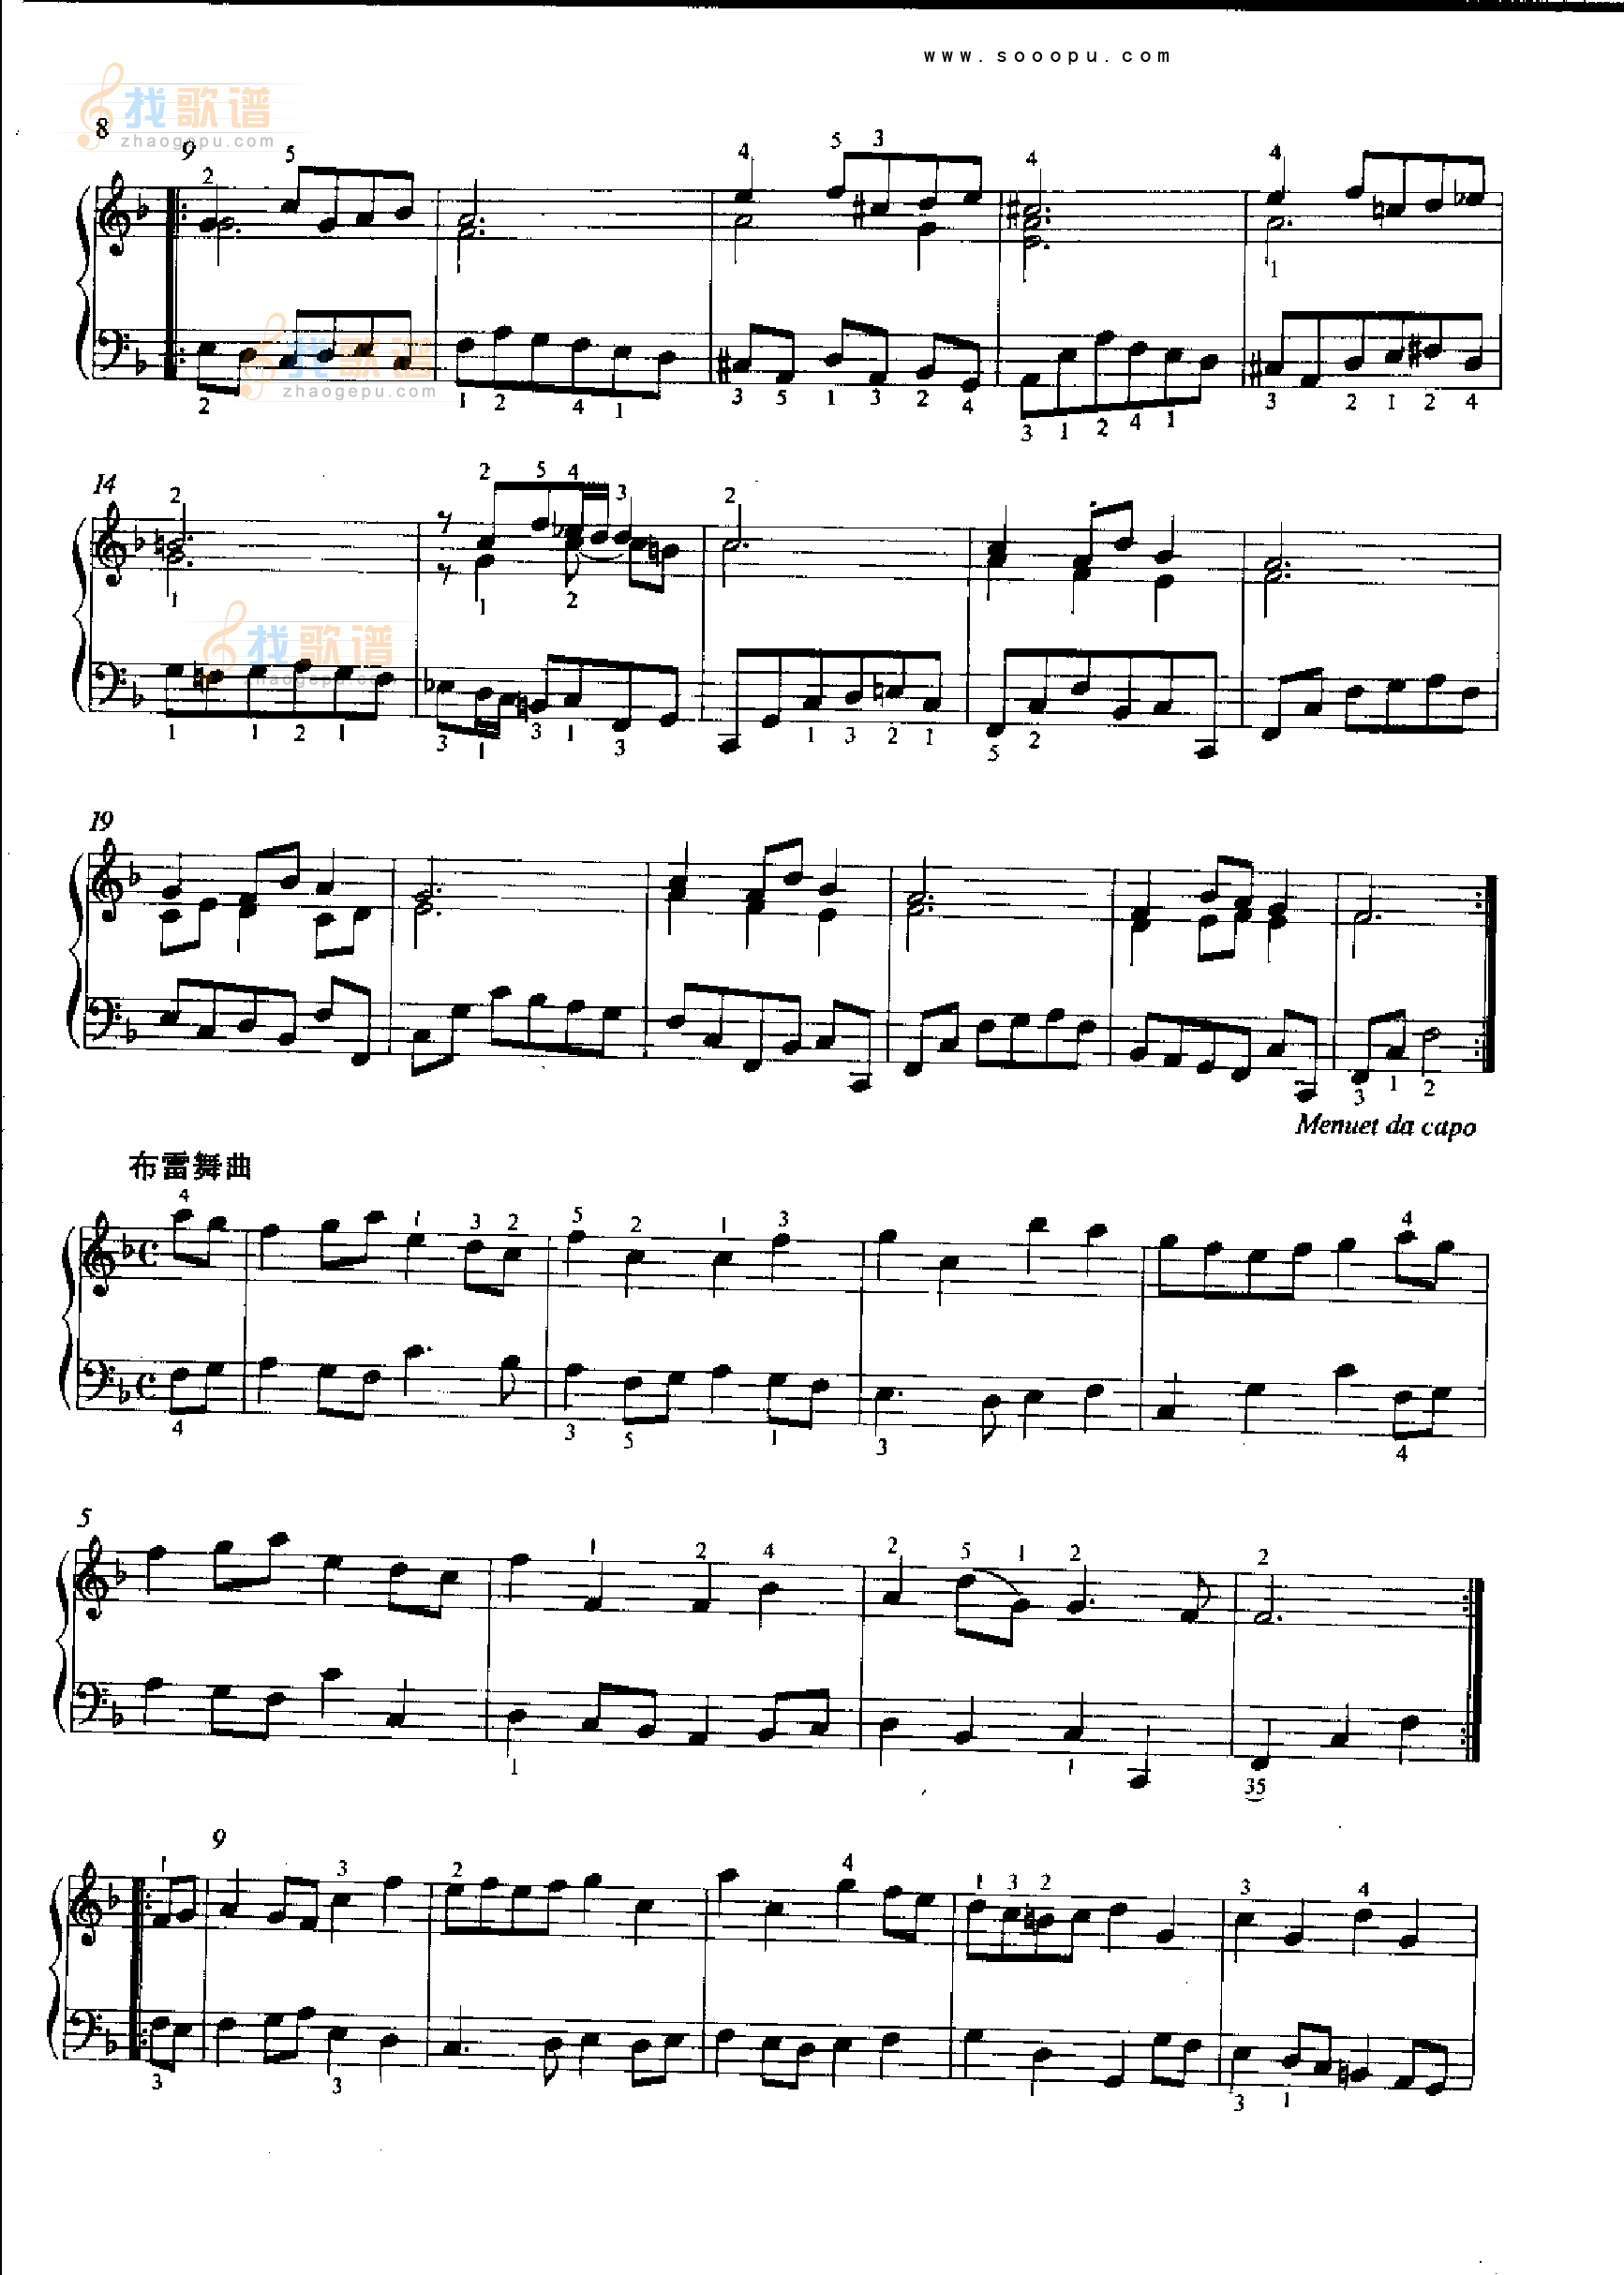 F大调序曲BWV820 